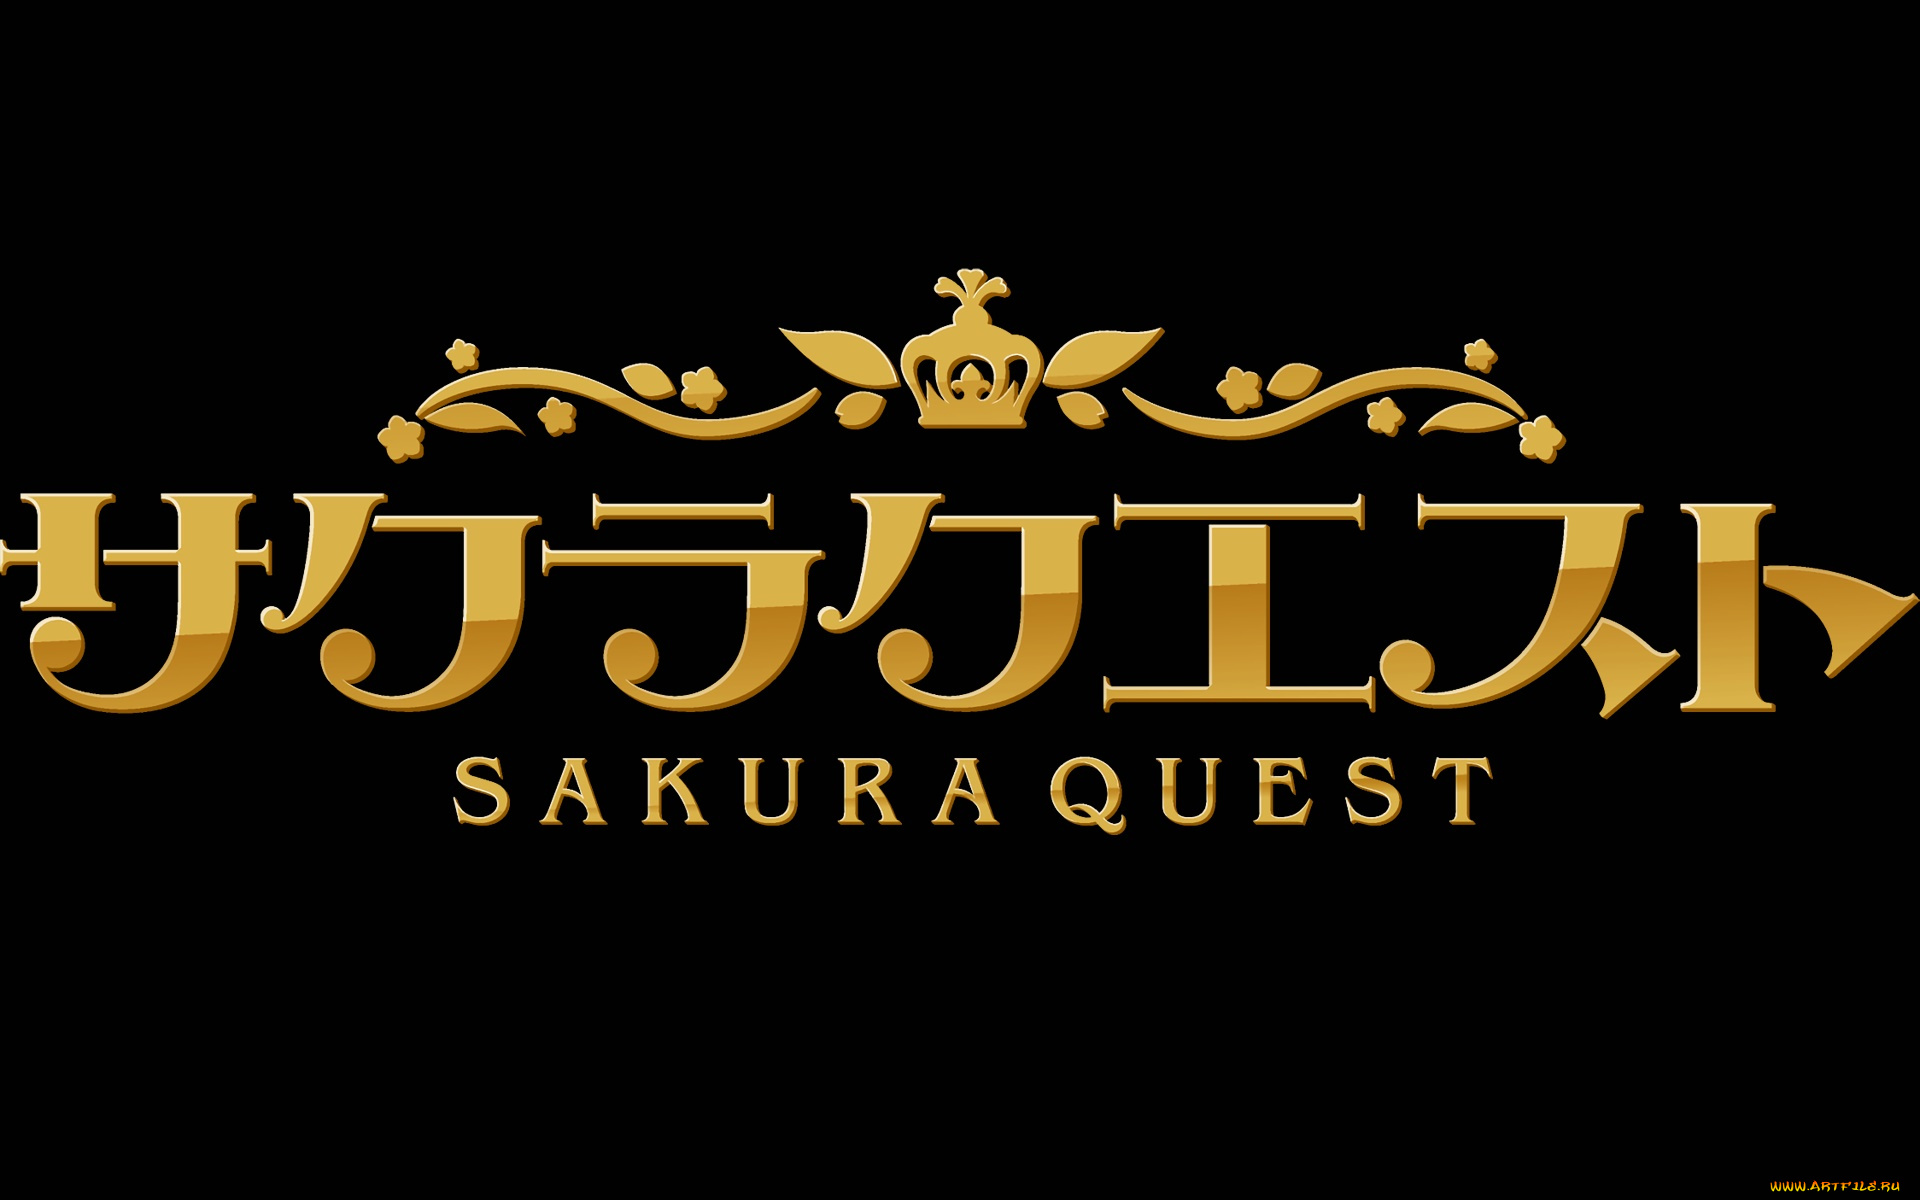 sakura, quest, аниме, фон, логотип